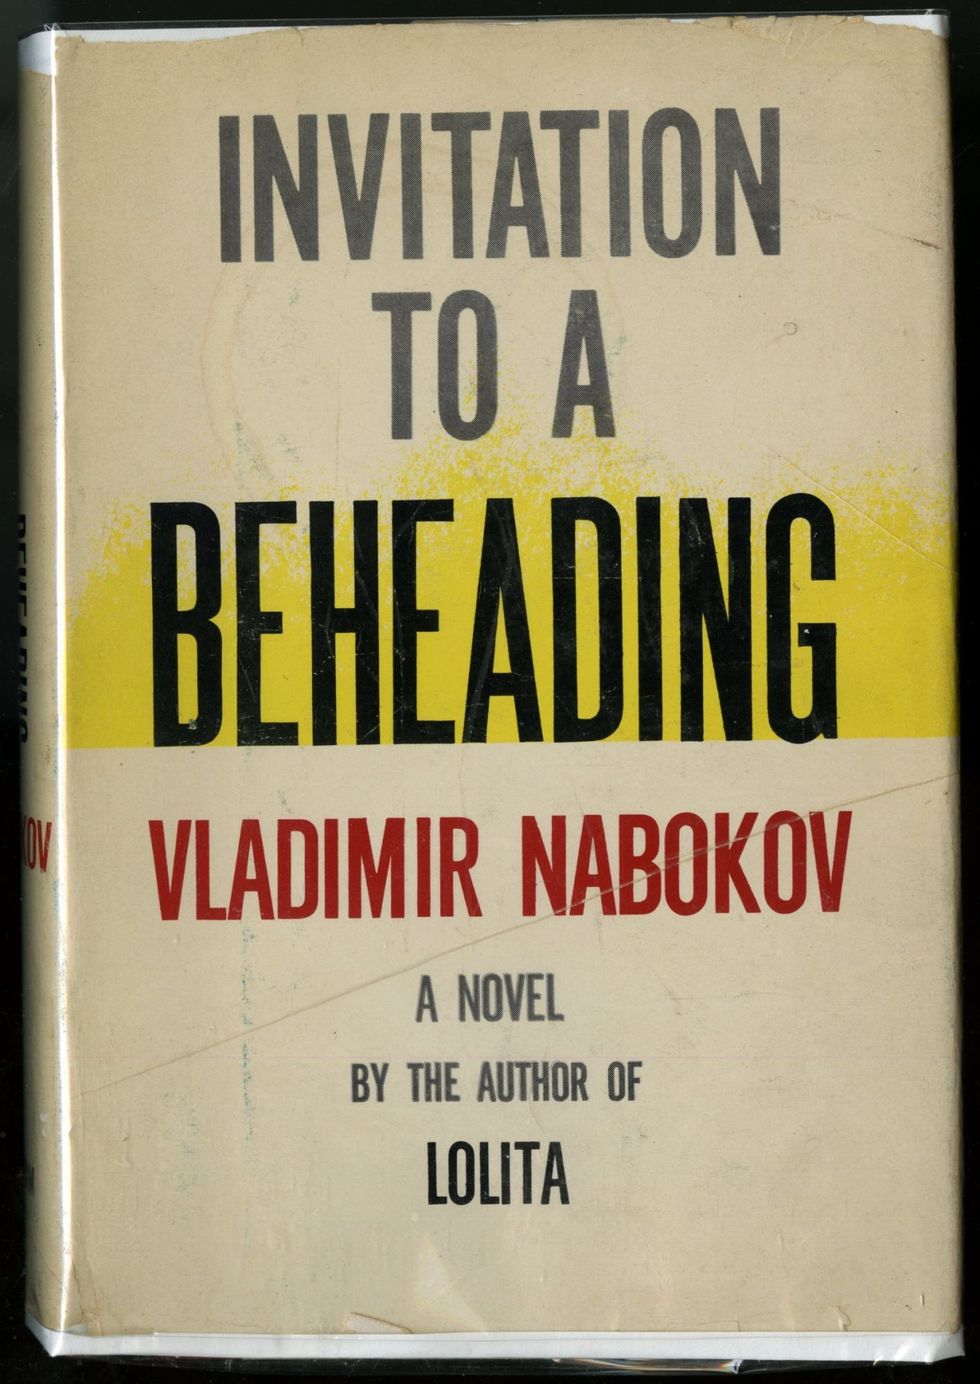 Invitation to a Beheading